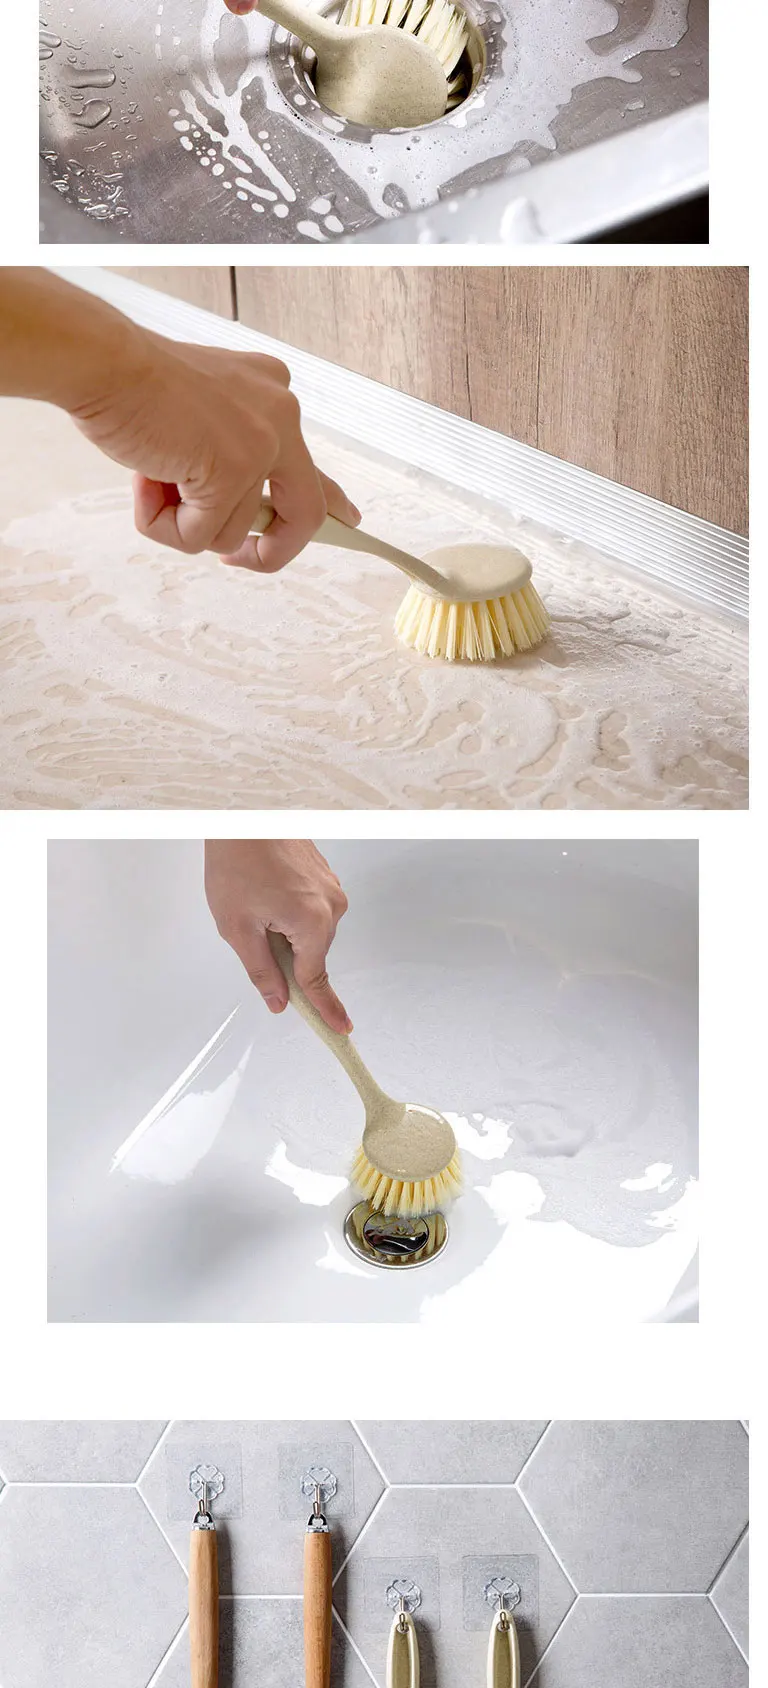 Кухонная щетка для чистки посуды щетка может быть висячая антипригарное масло длинная ручка горшок для промывания кисти для мытья посуды горшок артефакт